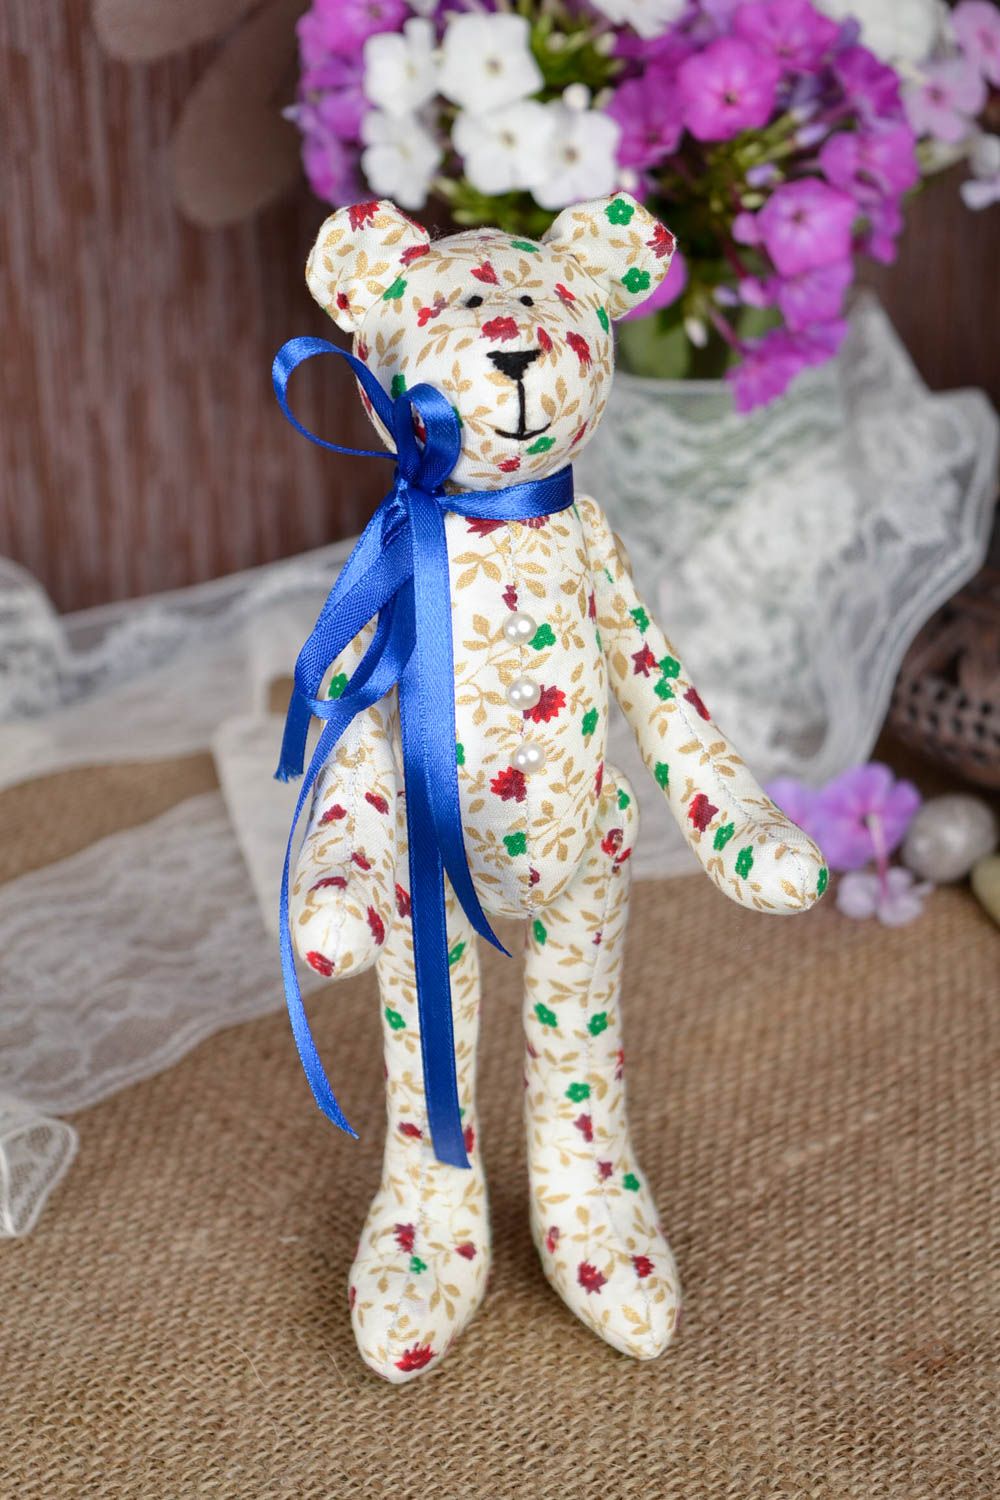 Jouet Ours en tissu de coton fait main avec noeud bleu Cadeau pour enfant photo 1